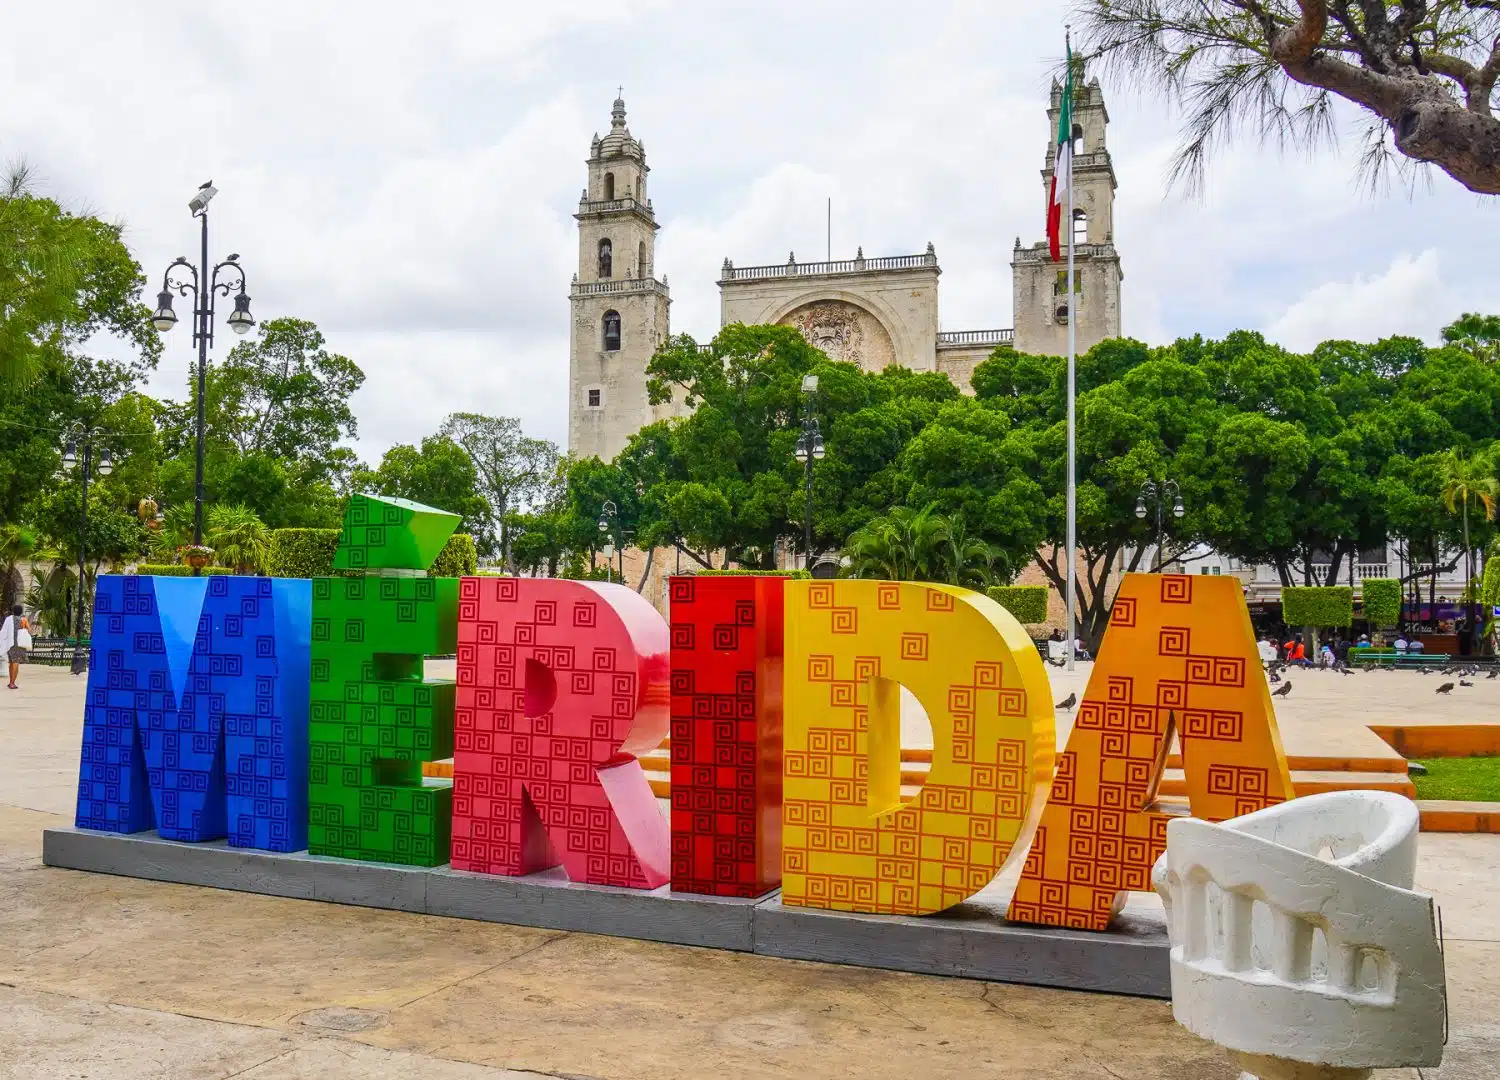 The Merida sign in the Plaza Grande.